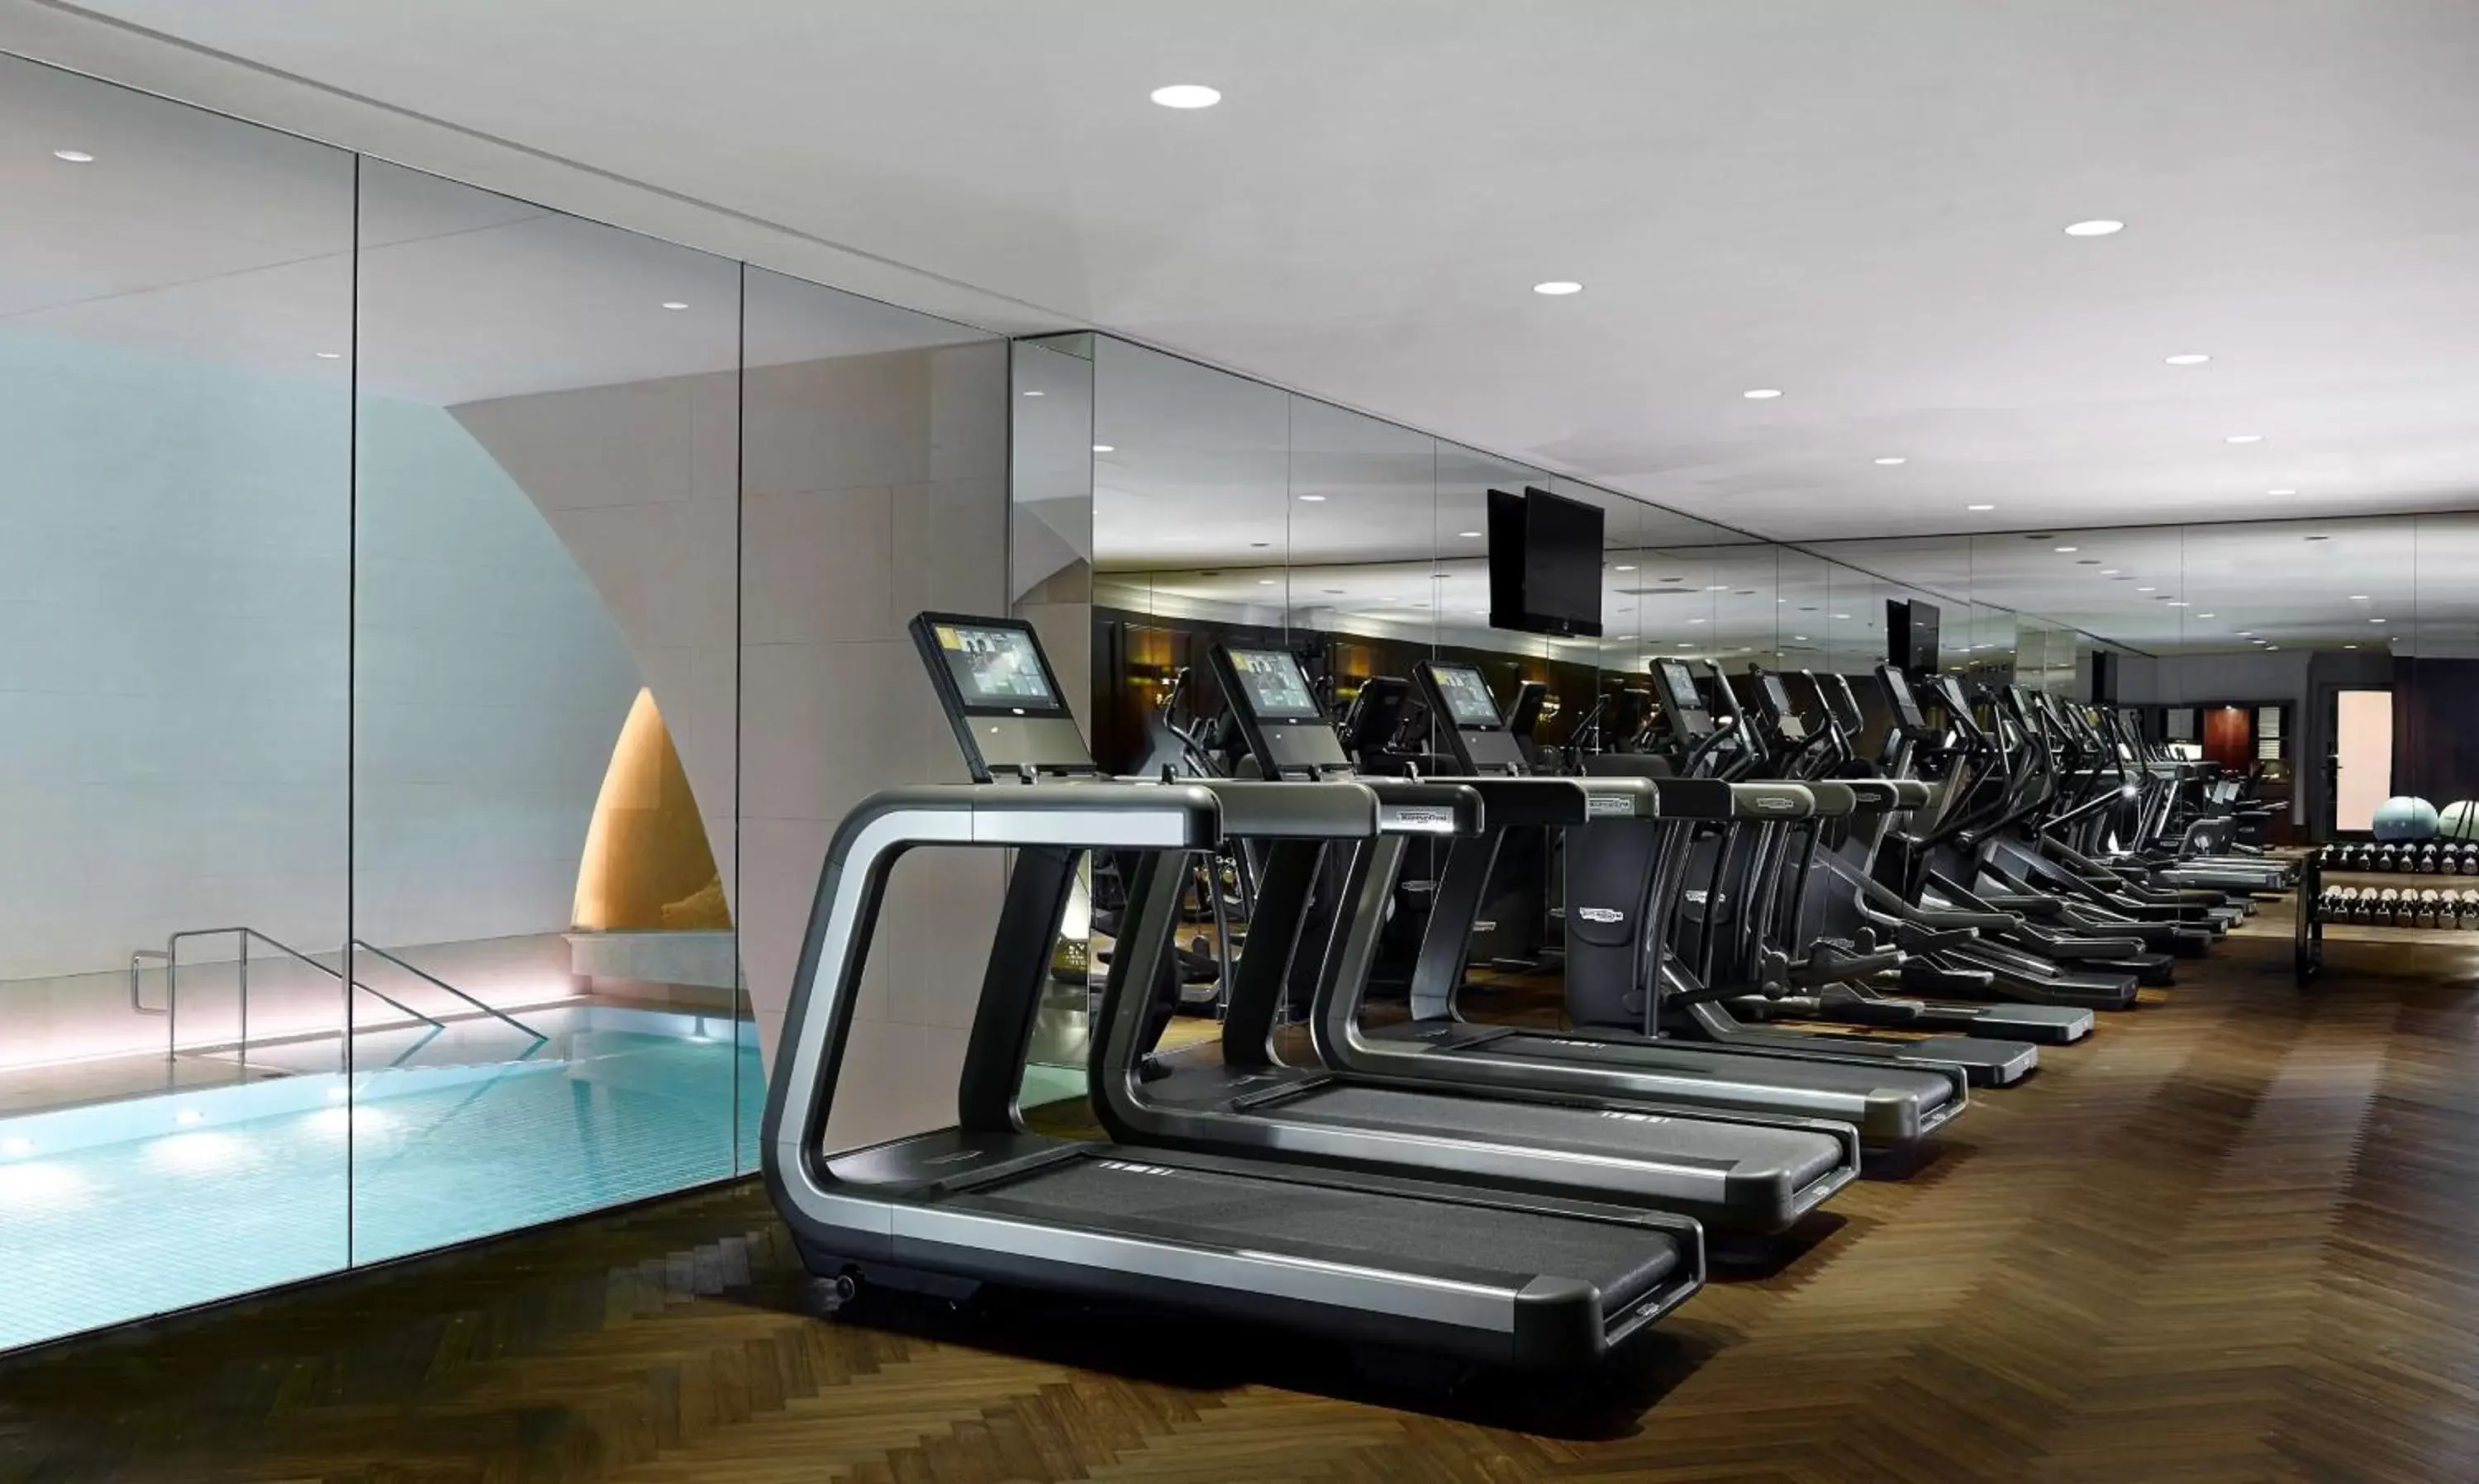 Fitness centre/facilities, Fitness Center/Facilities in Park Hyatt Vienna